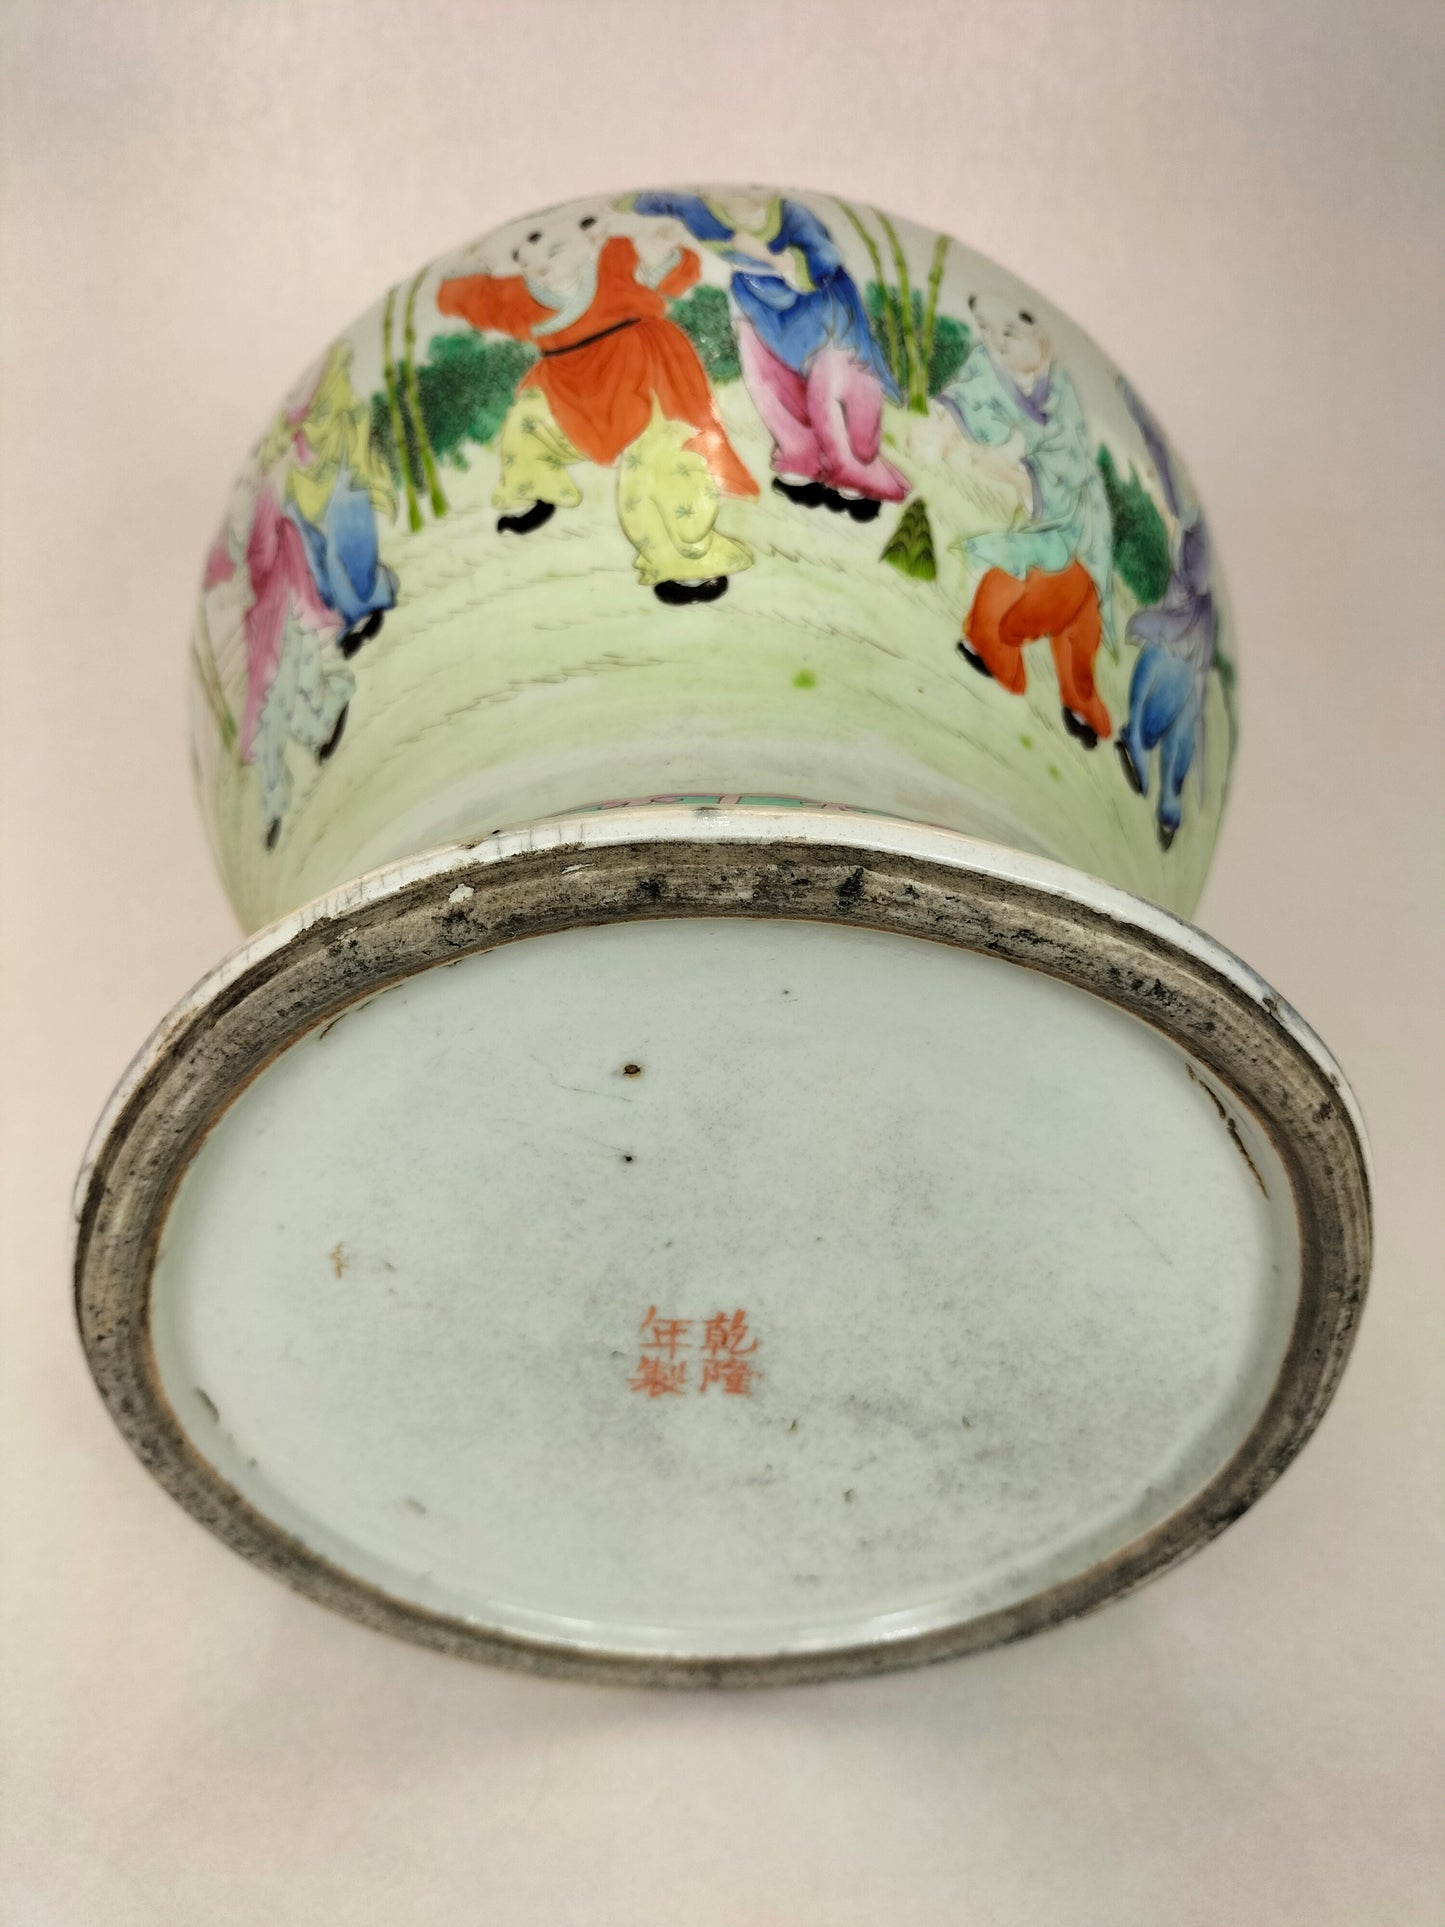 وردة عائلية صينية قديمة نادرة "الأولاد السعداء" مزهرية بغطاء // علامة تشيان لونغ - أسرة تشينغ - القرن التاسع عشر